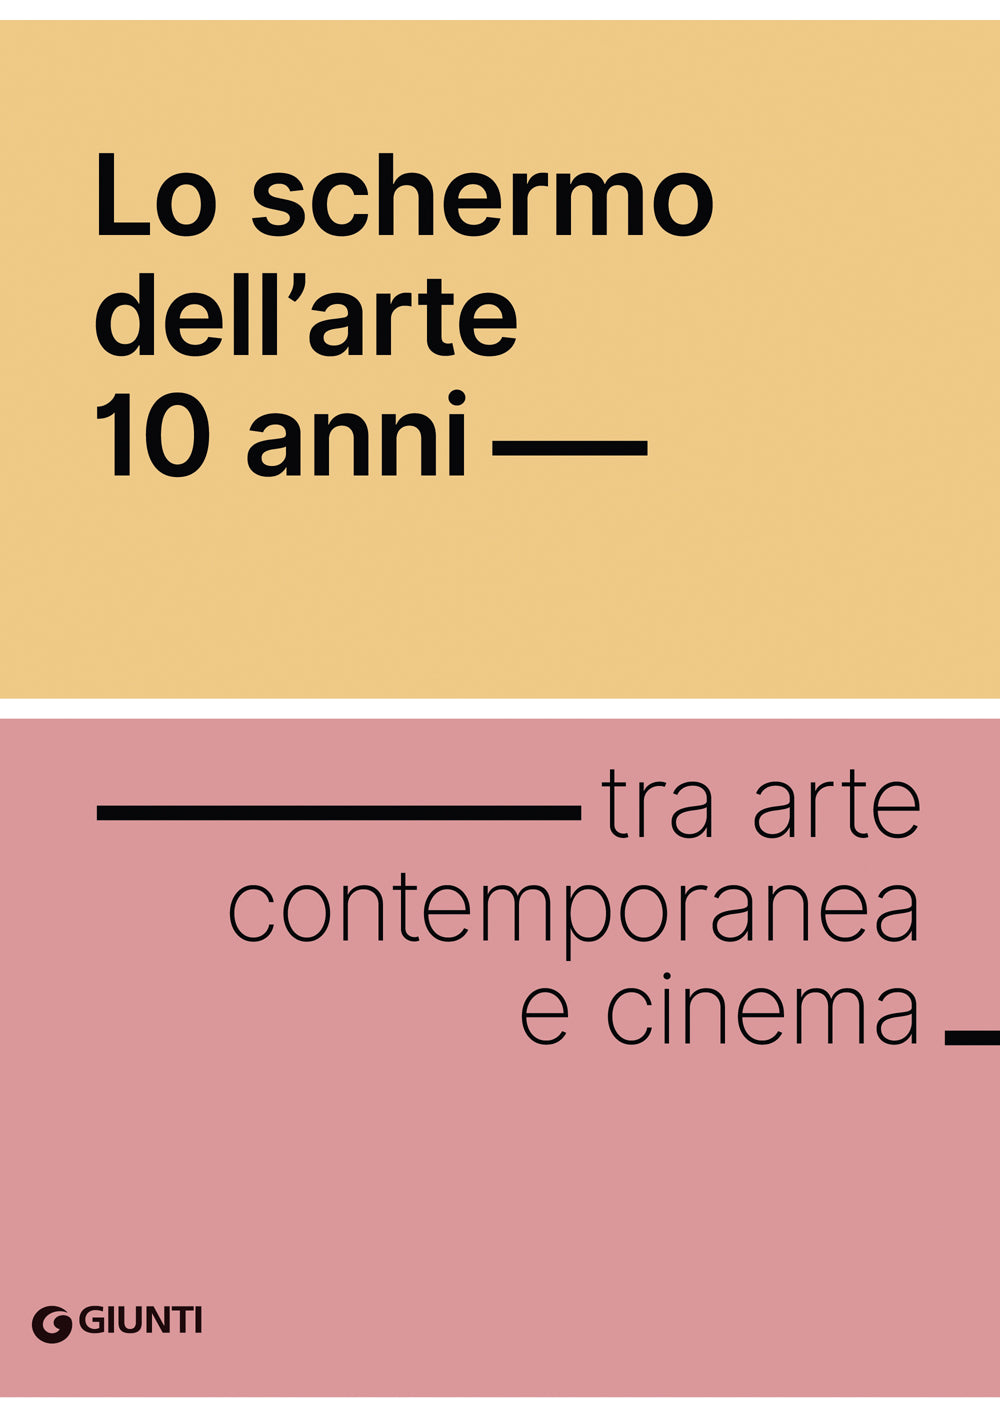 Lo schermo dell'arte 10 anni::tra arte contemporanea e cinema